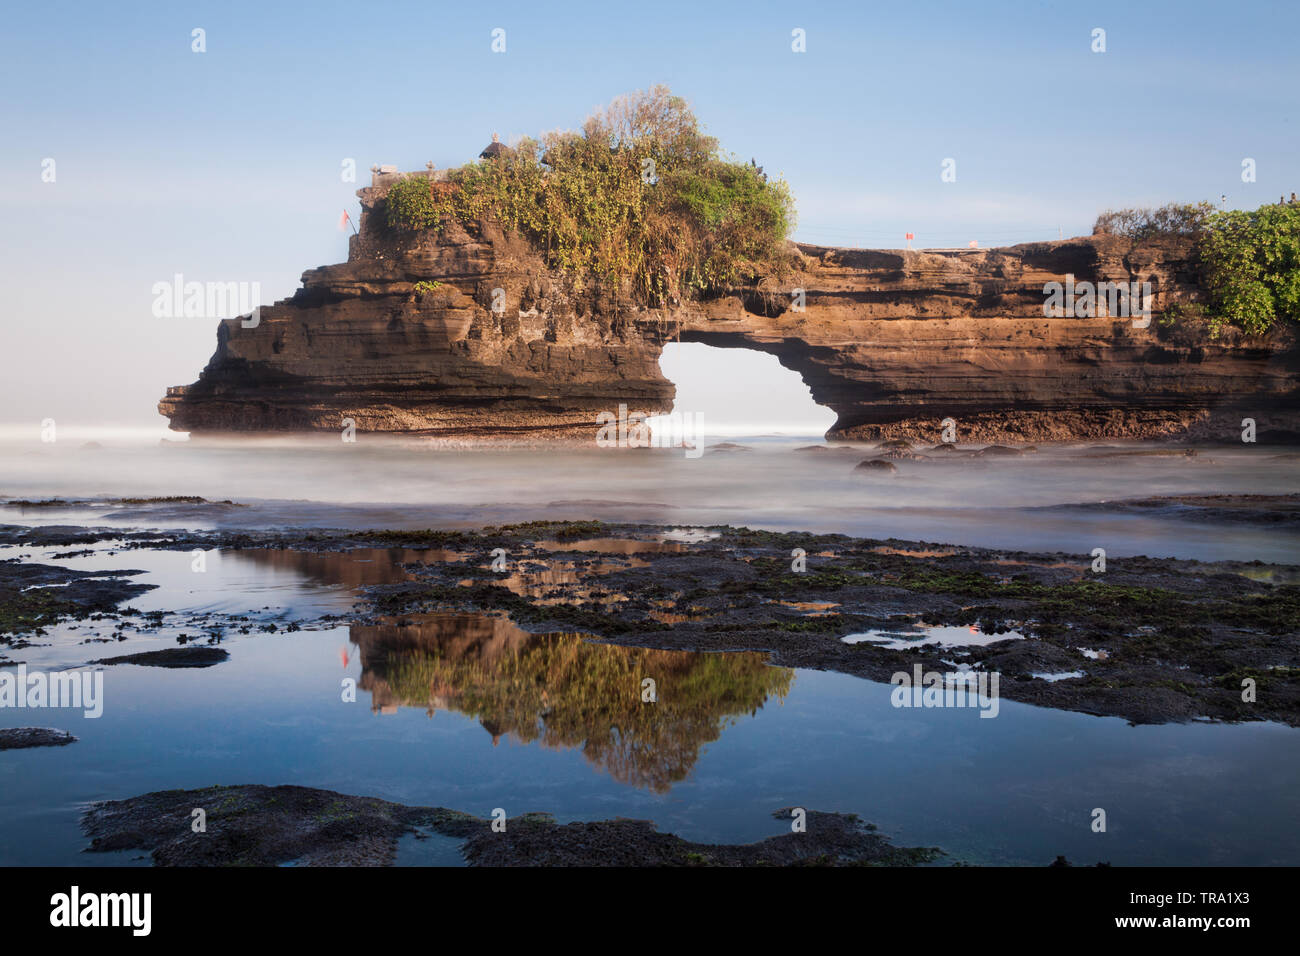 Atemberaubende natürlich verwitterter Fels Bogen von Batu Bolong Teil der Welt berühmten Tanah Lot rock Tempel auf Bali, Indonesien. Weitwinkel seascape Bild Stockfoto